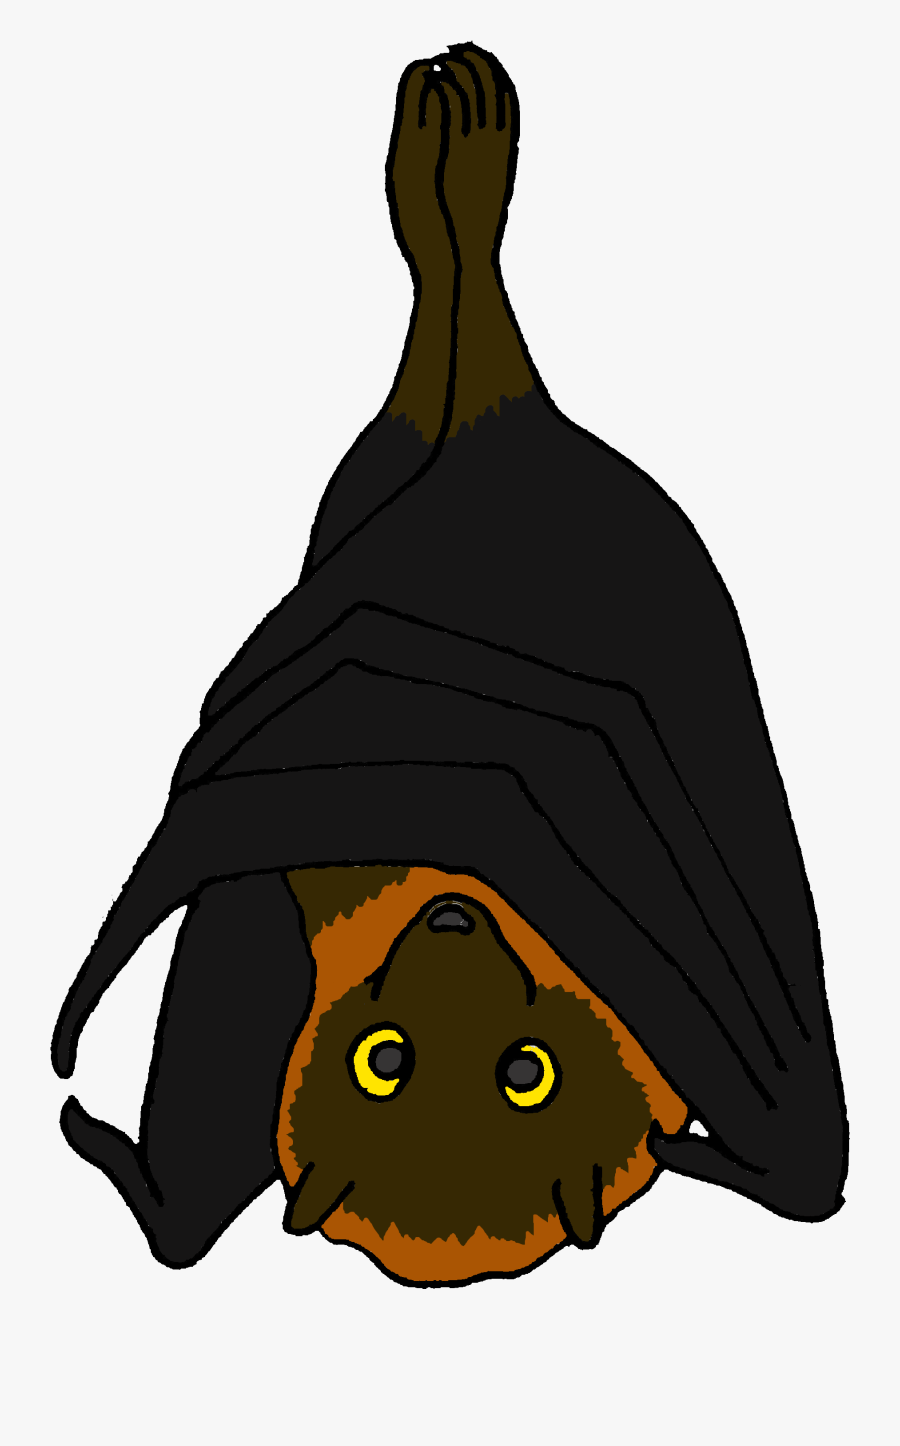 Transparent Fruit Bat Clipart - Cartoon Picture Of A Fruit Bat, Transparent Clipart